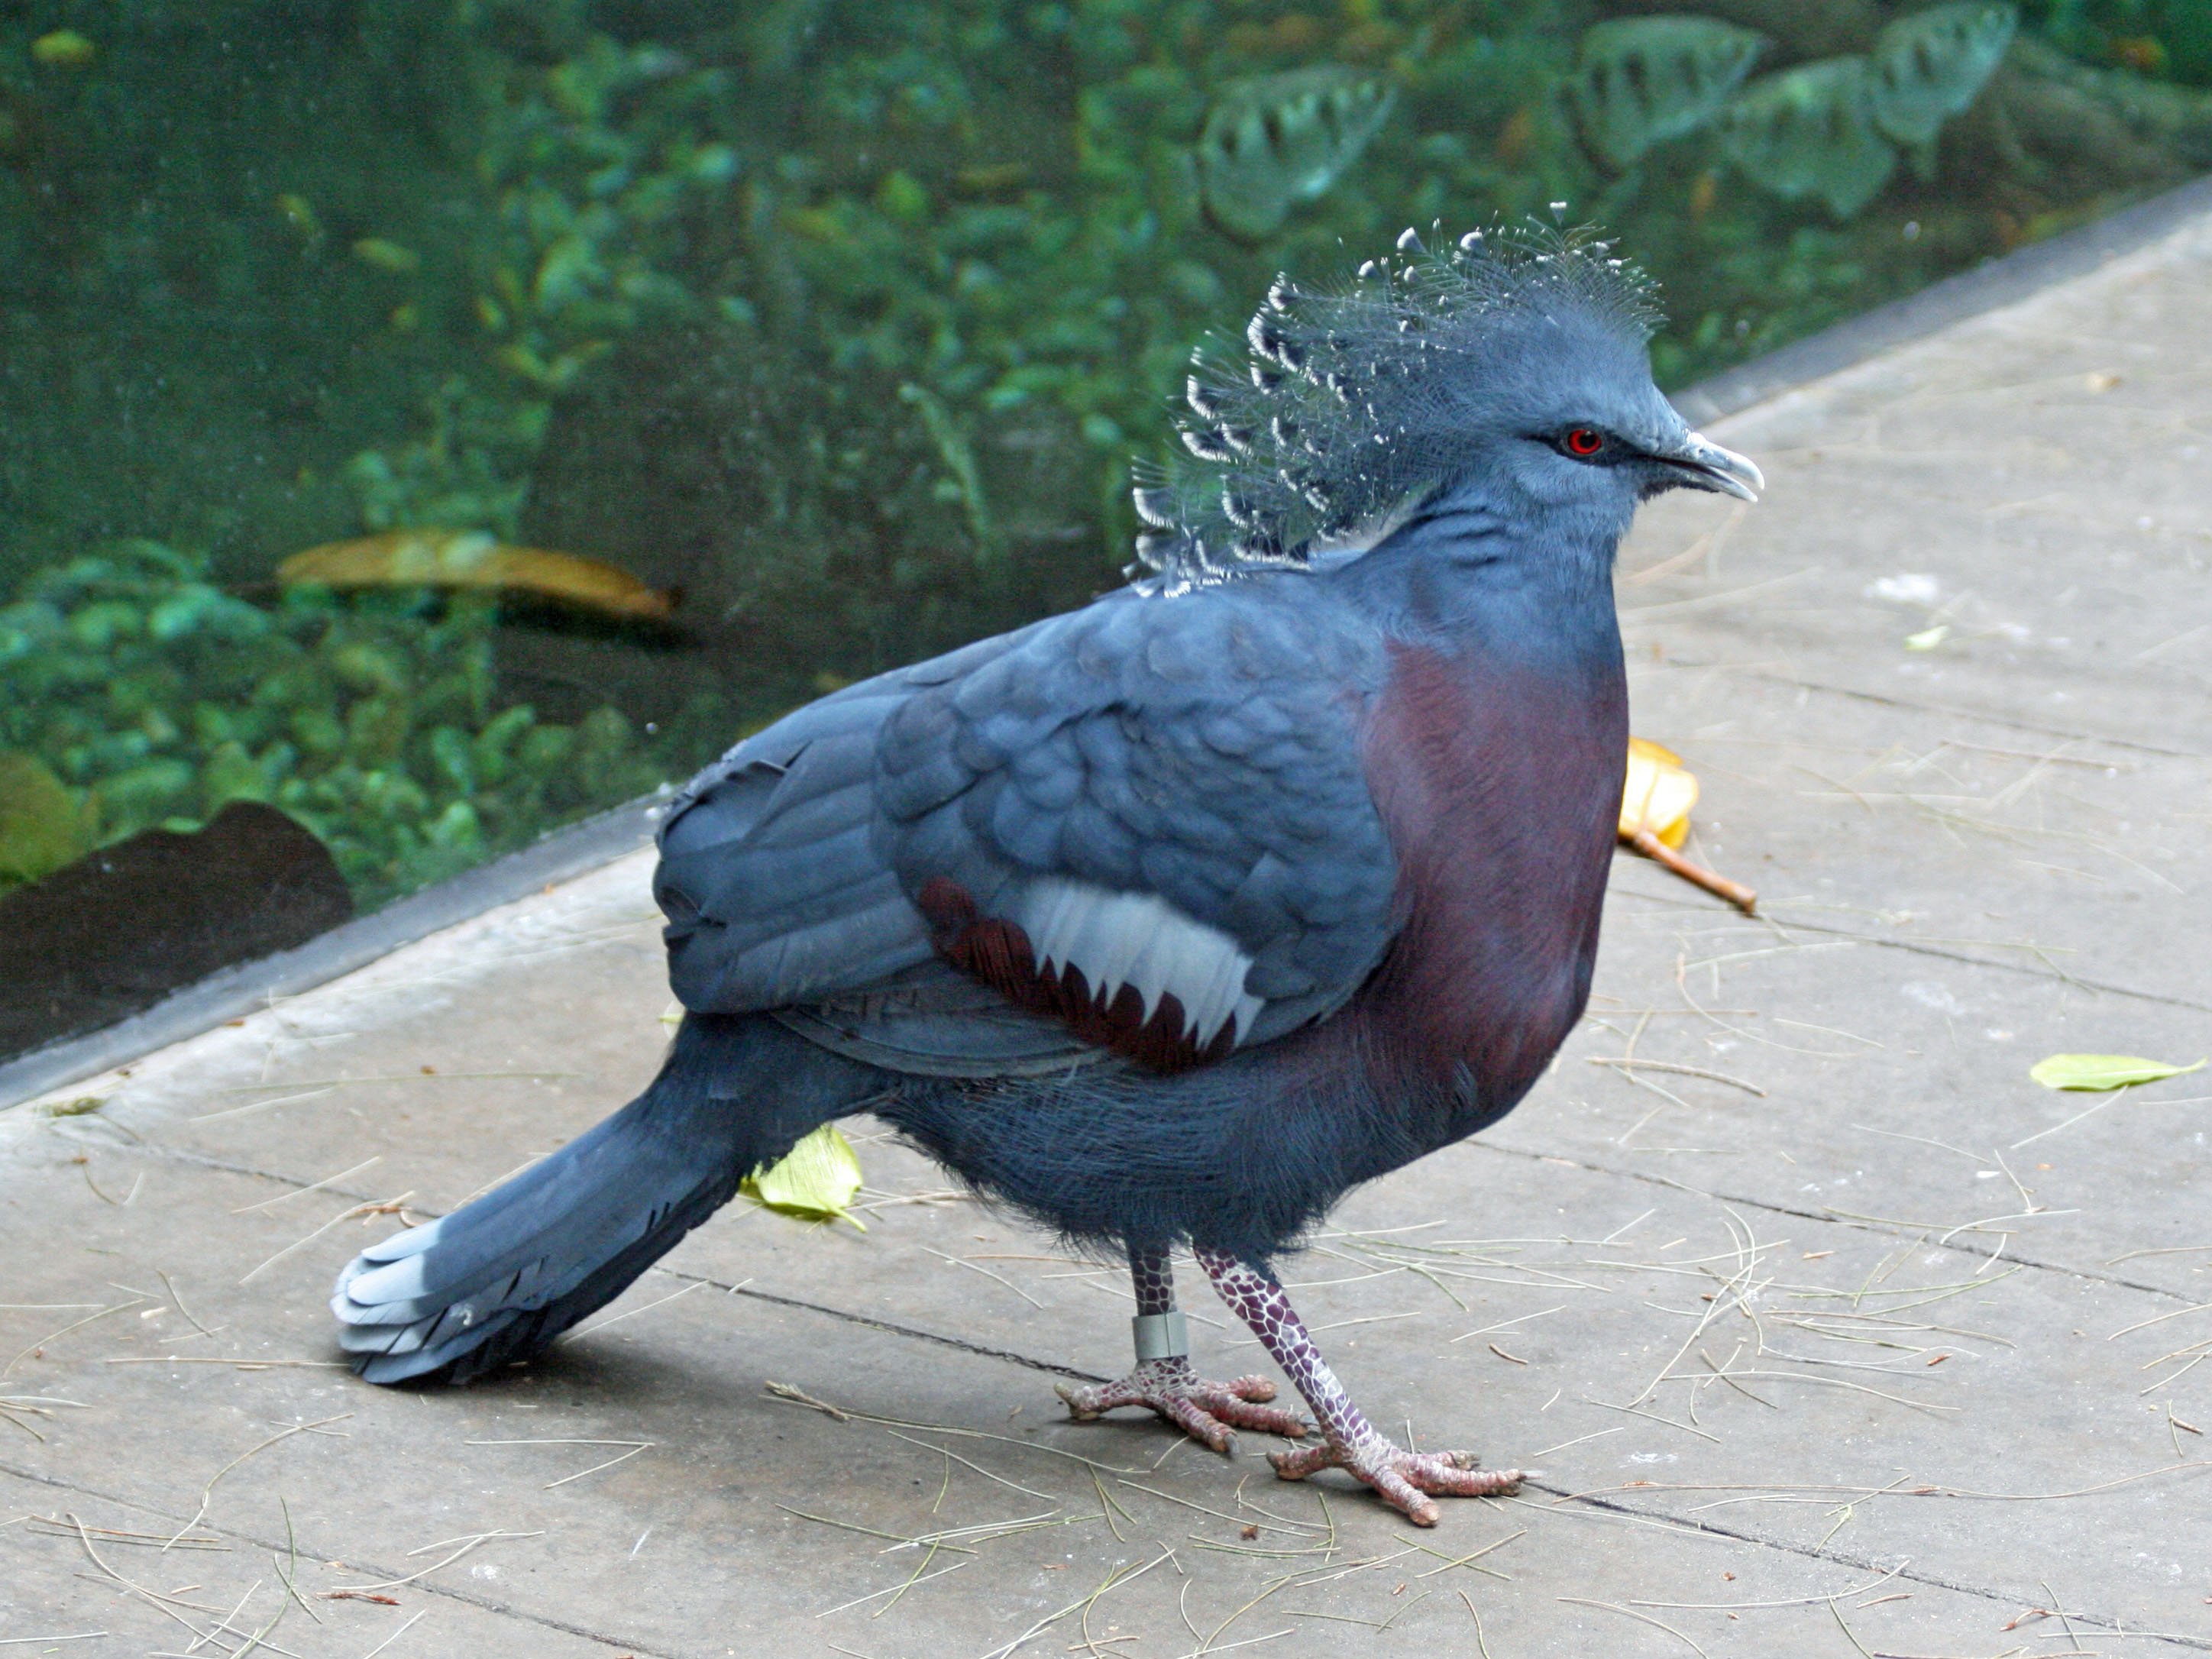 Victoria Crowned Pigeon #2